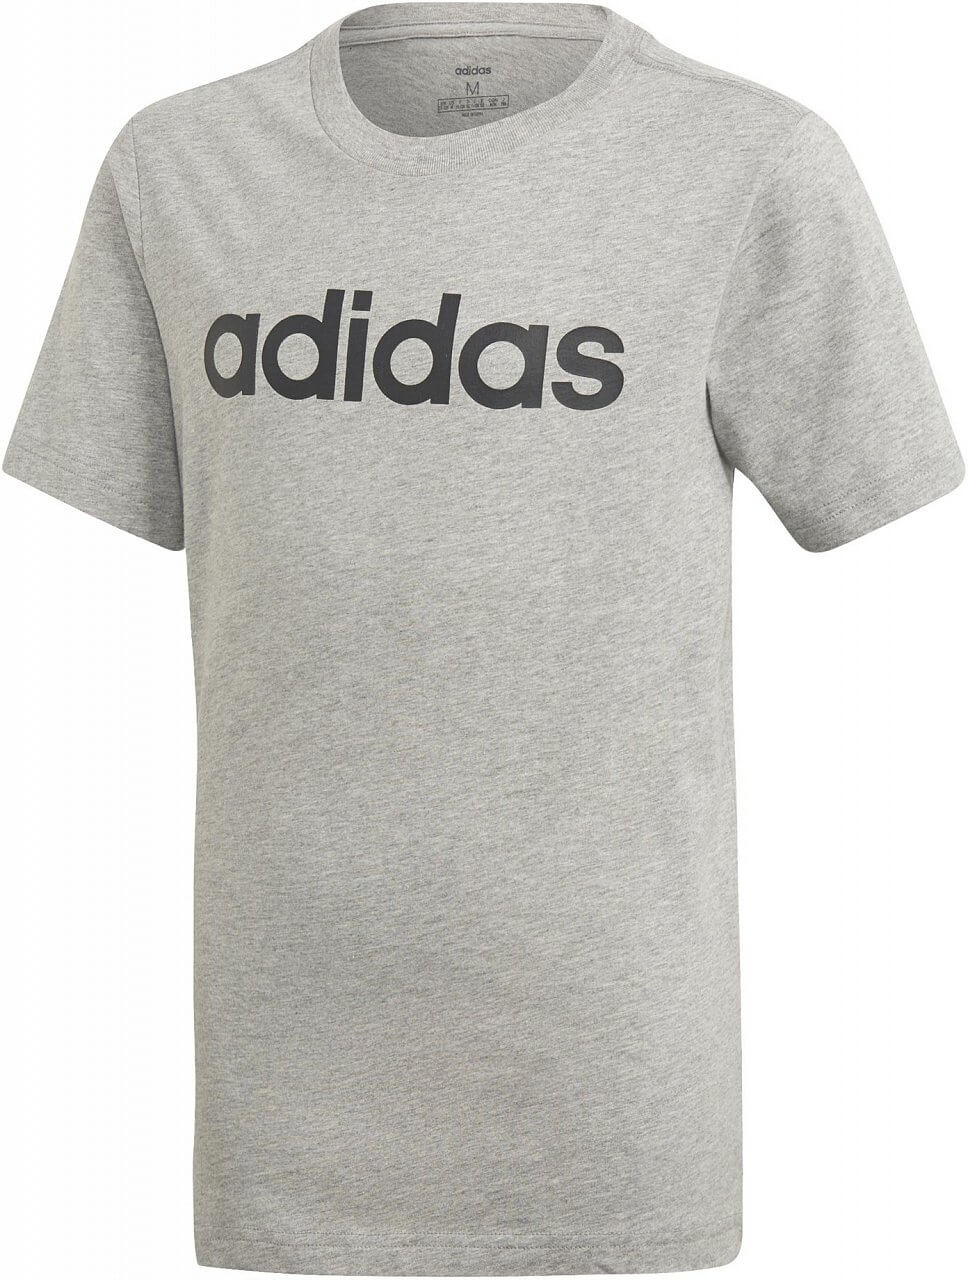 Pólók adidas Youth Boys Essentials Linear T-Shirt